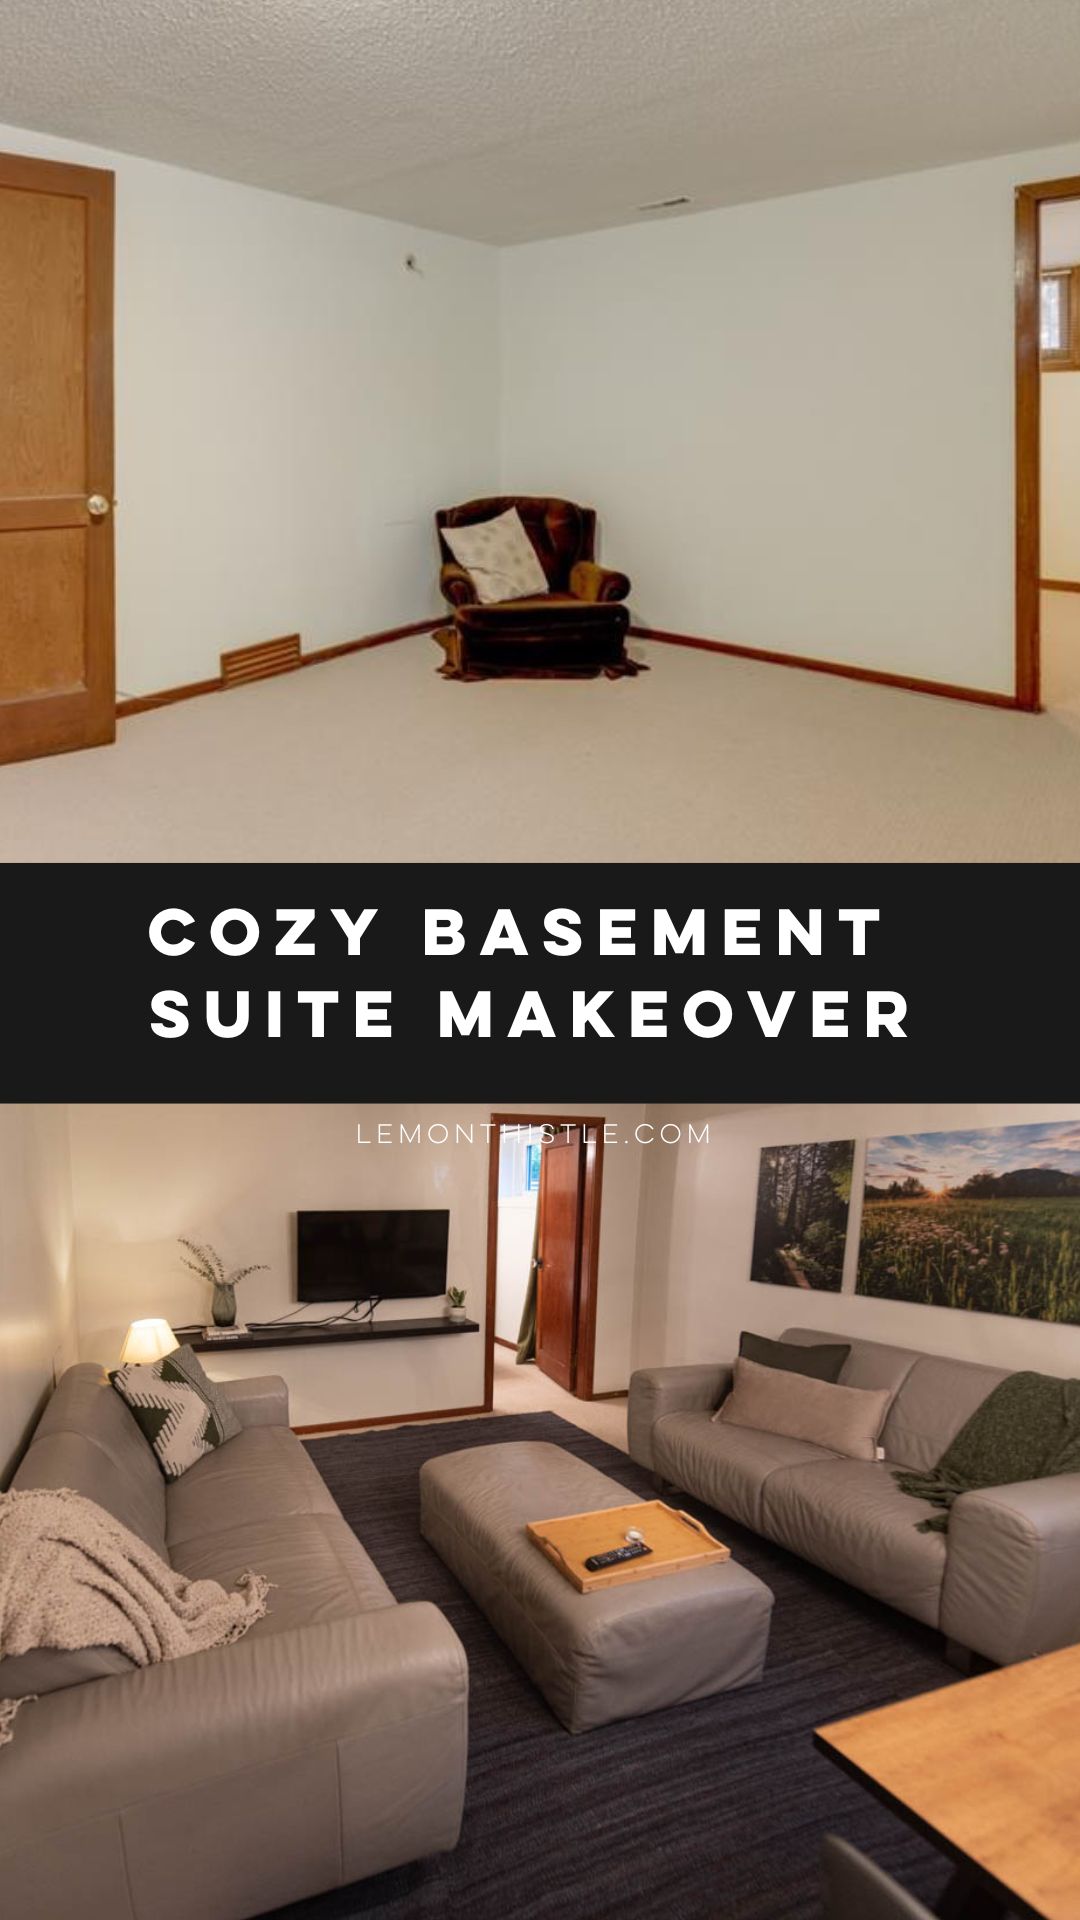 Cozy basement suite makeover